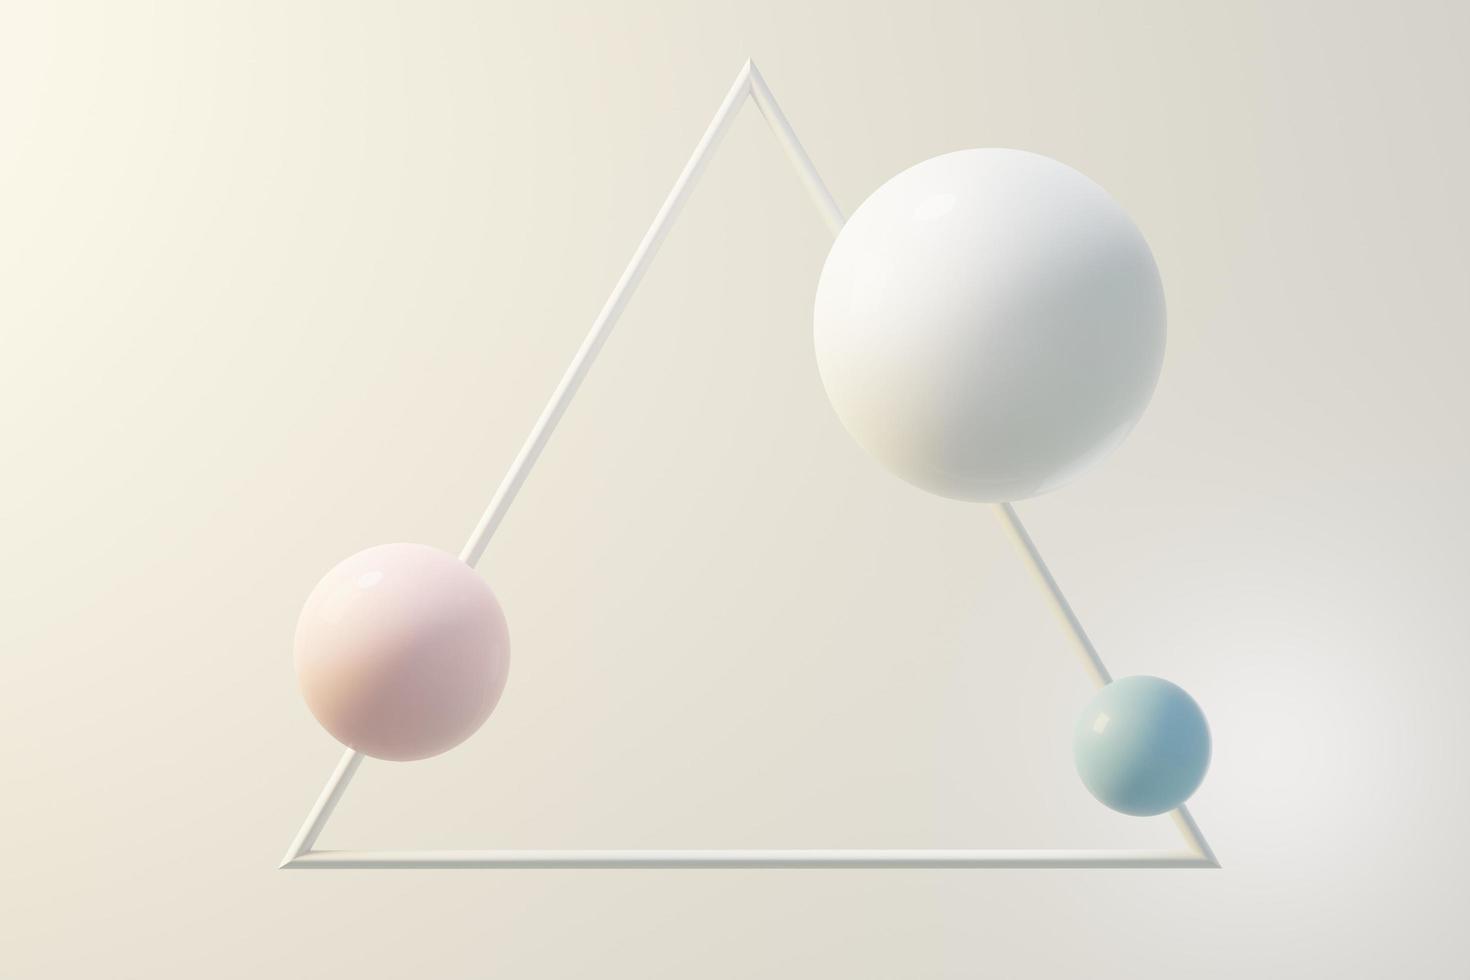 3D-Darstellung von Pastellkugeln, Seifenblasen, Blobs, die isoliert auf pastellfarbenem Hintergrund in der Luft schweben. abstrakte Szene. foto